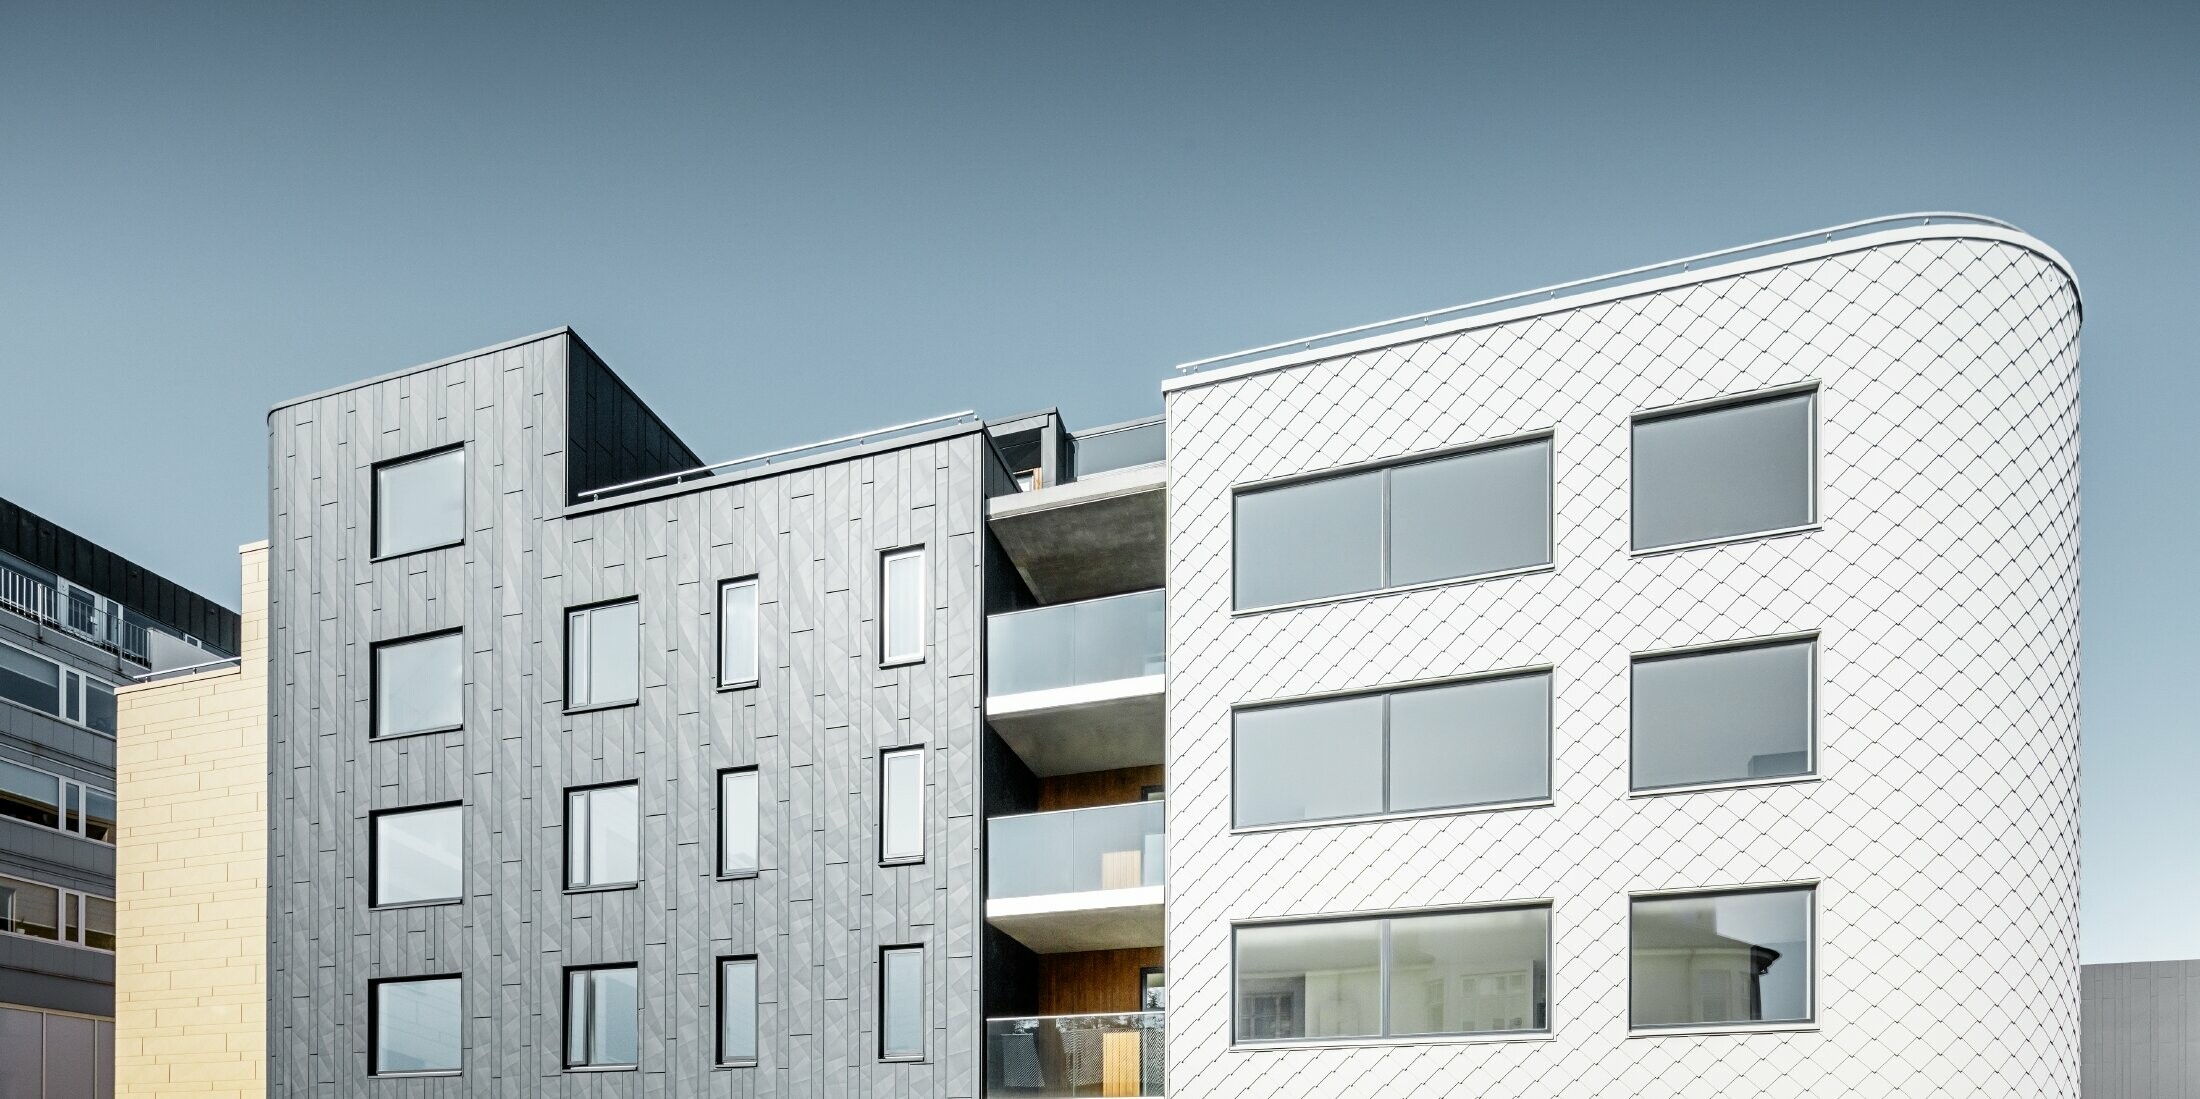 Vertikálně namontované fasádní lamely Siding.X v barvě antracitové na jedné budově, zatímco druhá je pokryta světlými fasádními šablonami 29 x 29